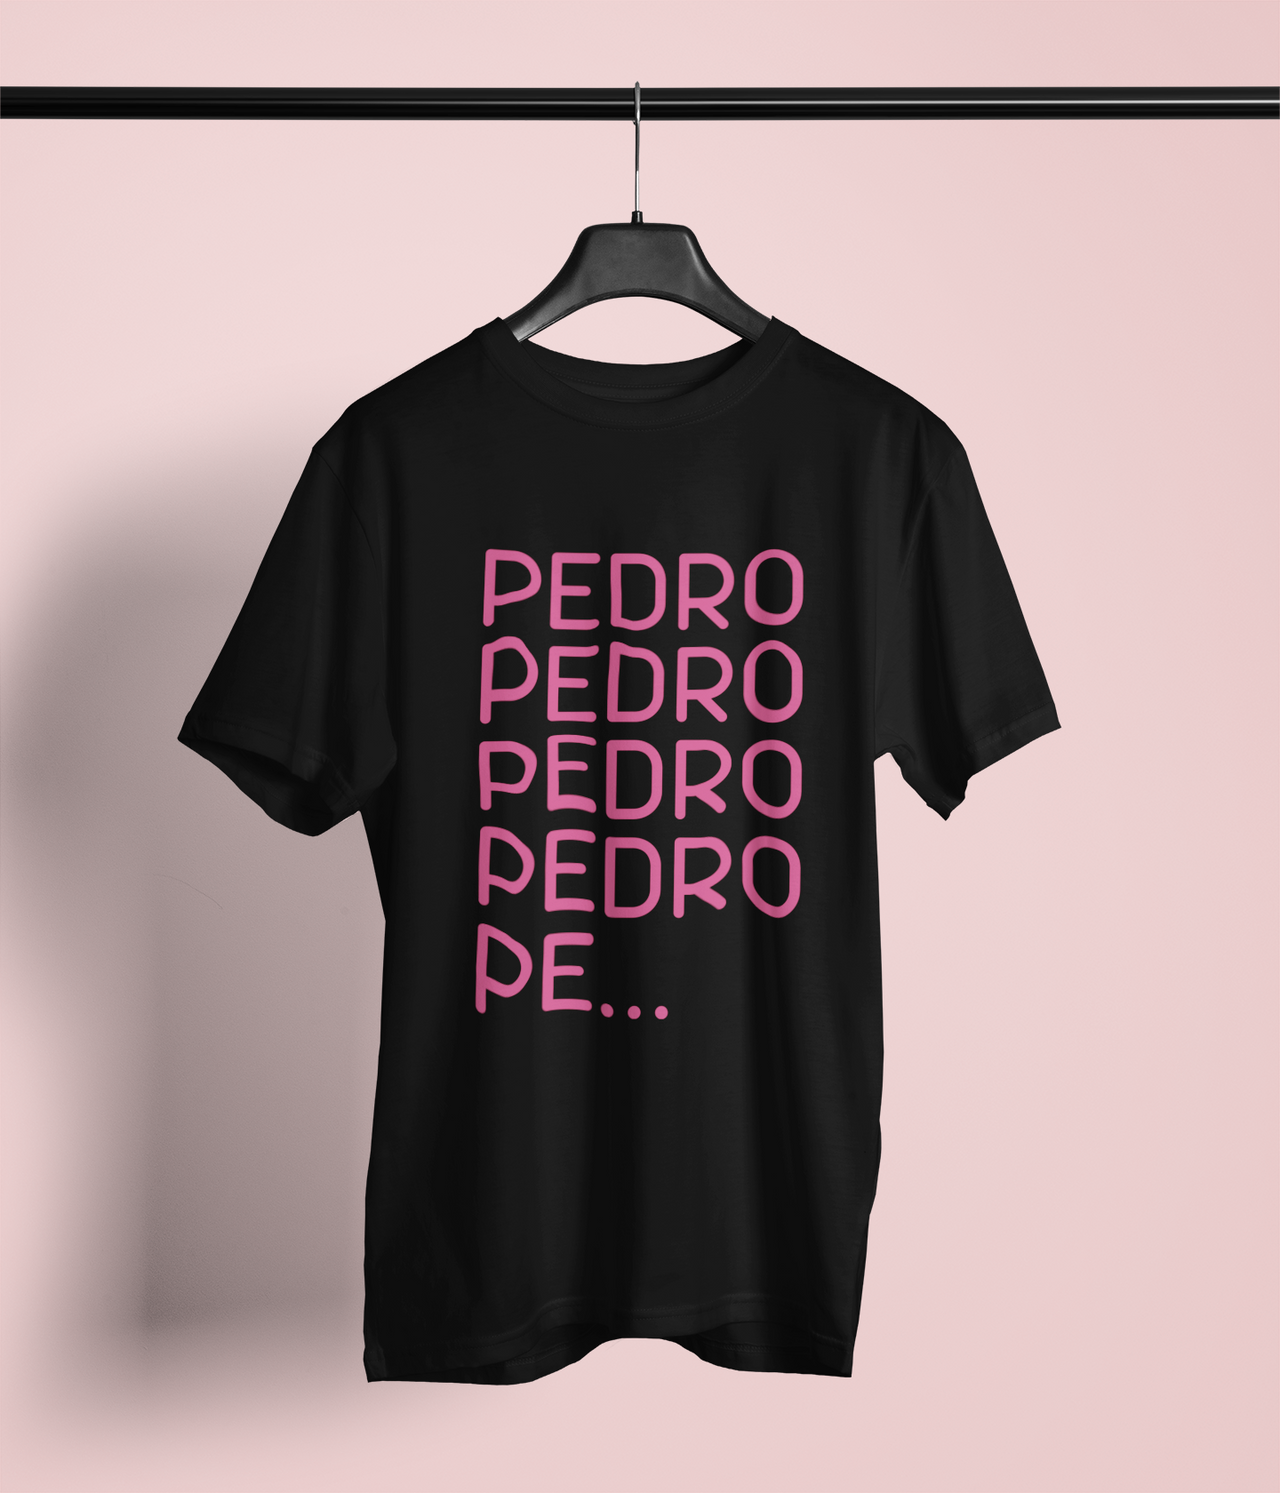 Juodi Unisex marškinėliai PEDRO PEDRO PEDRO rožinis užrašas